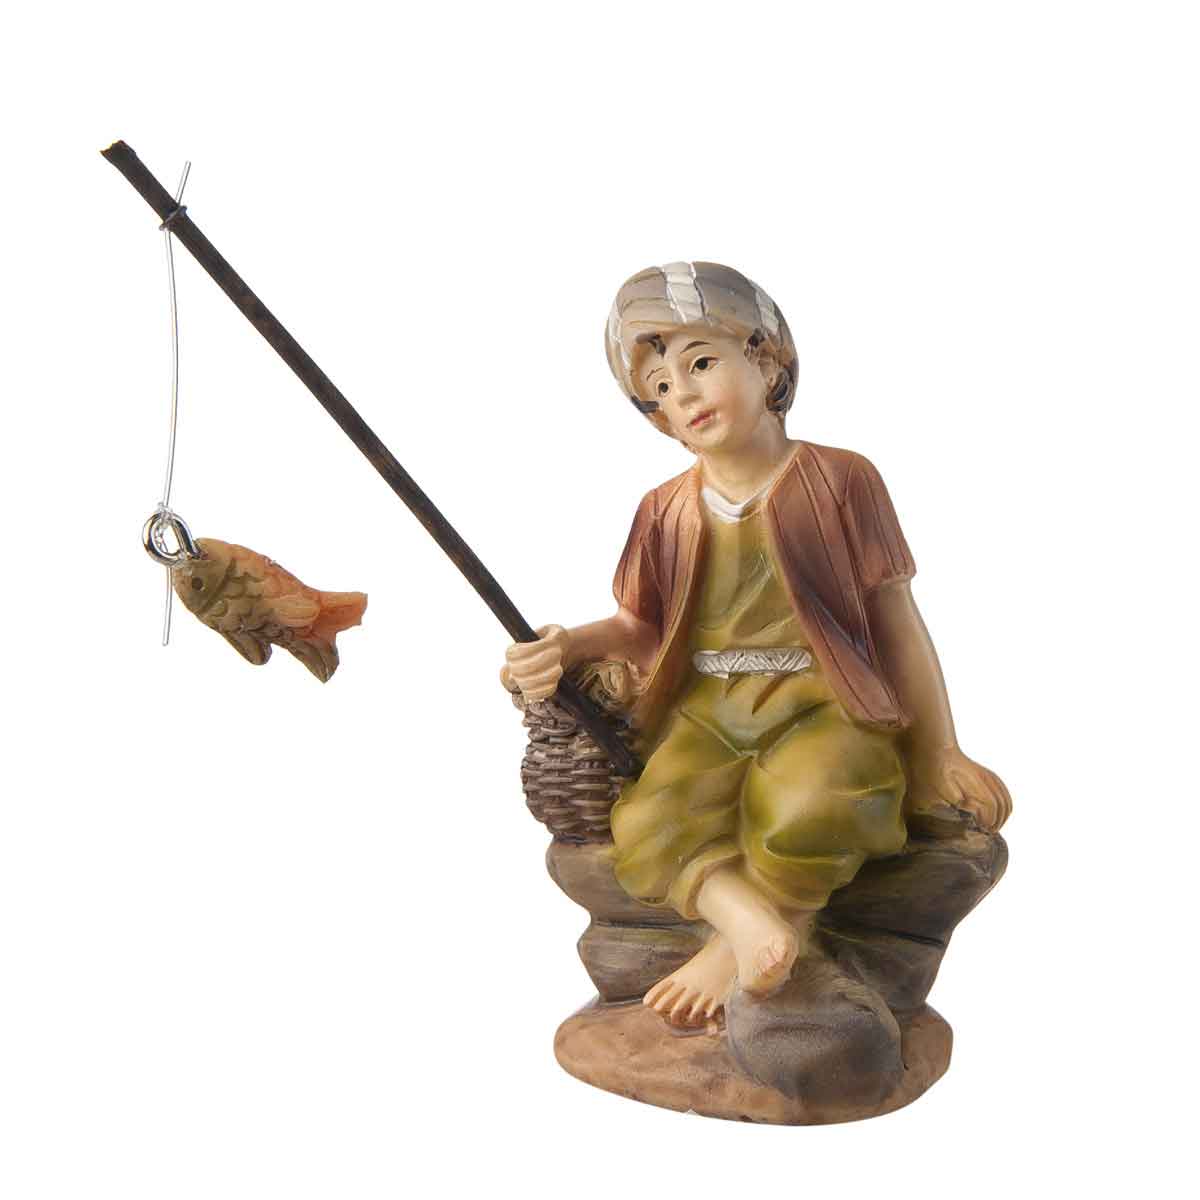 Presepe – Statuetta pescatore con canna da pesca altezza 9cm